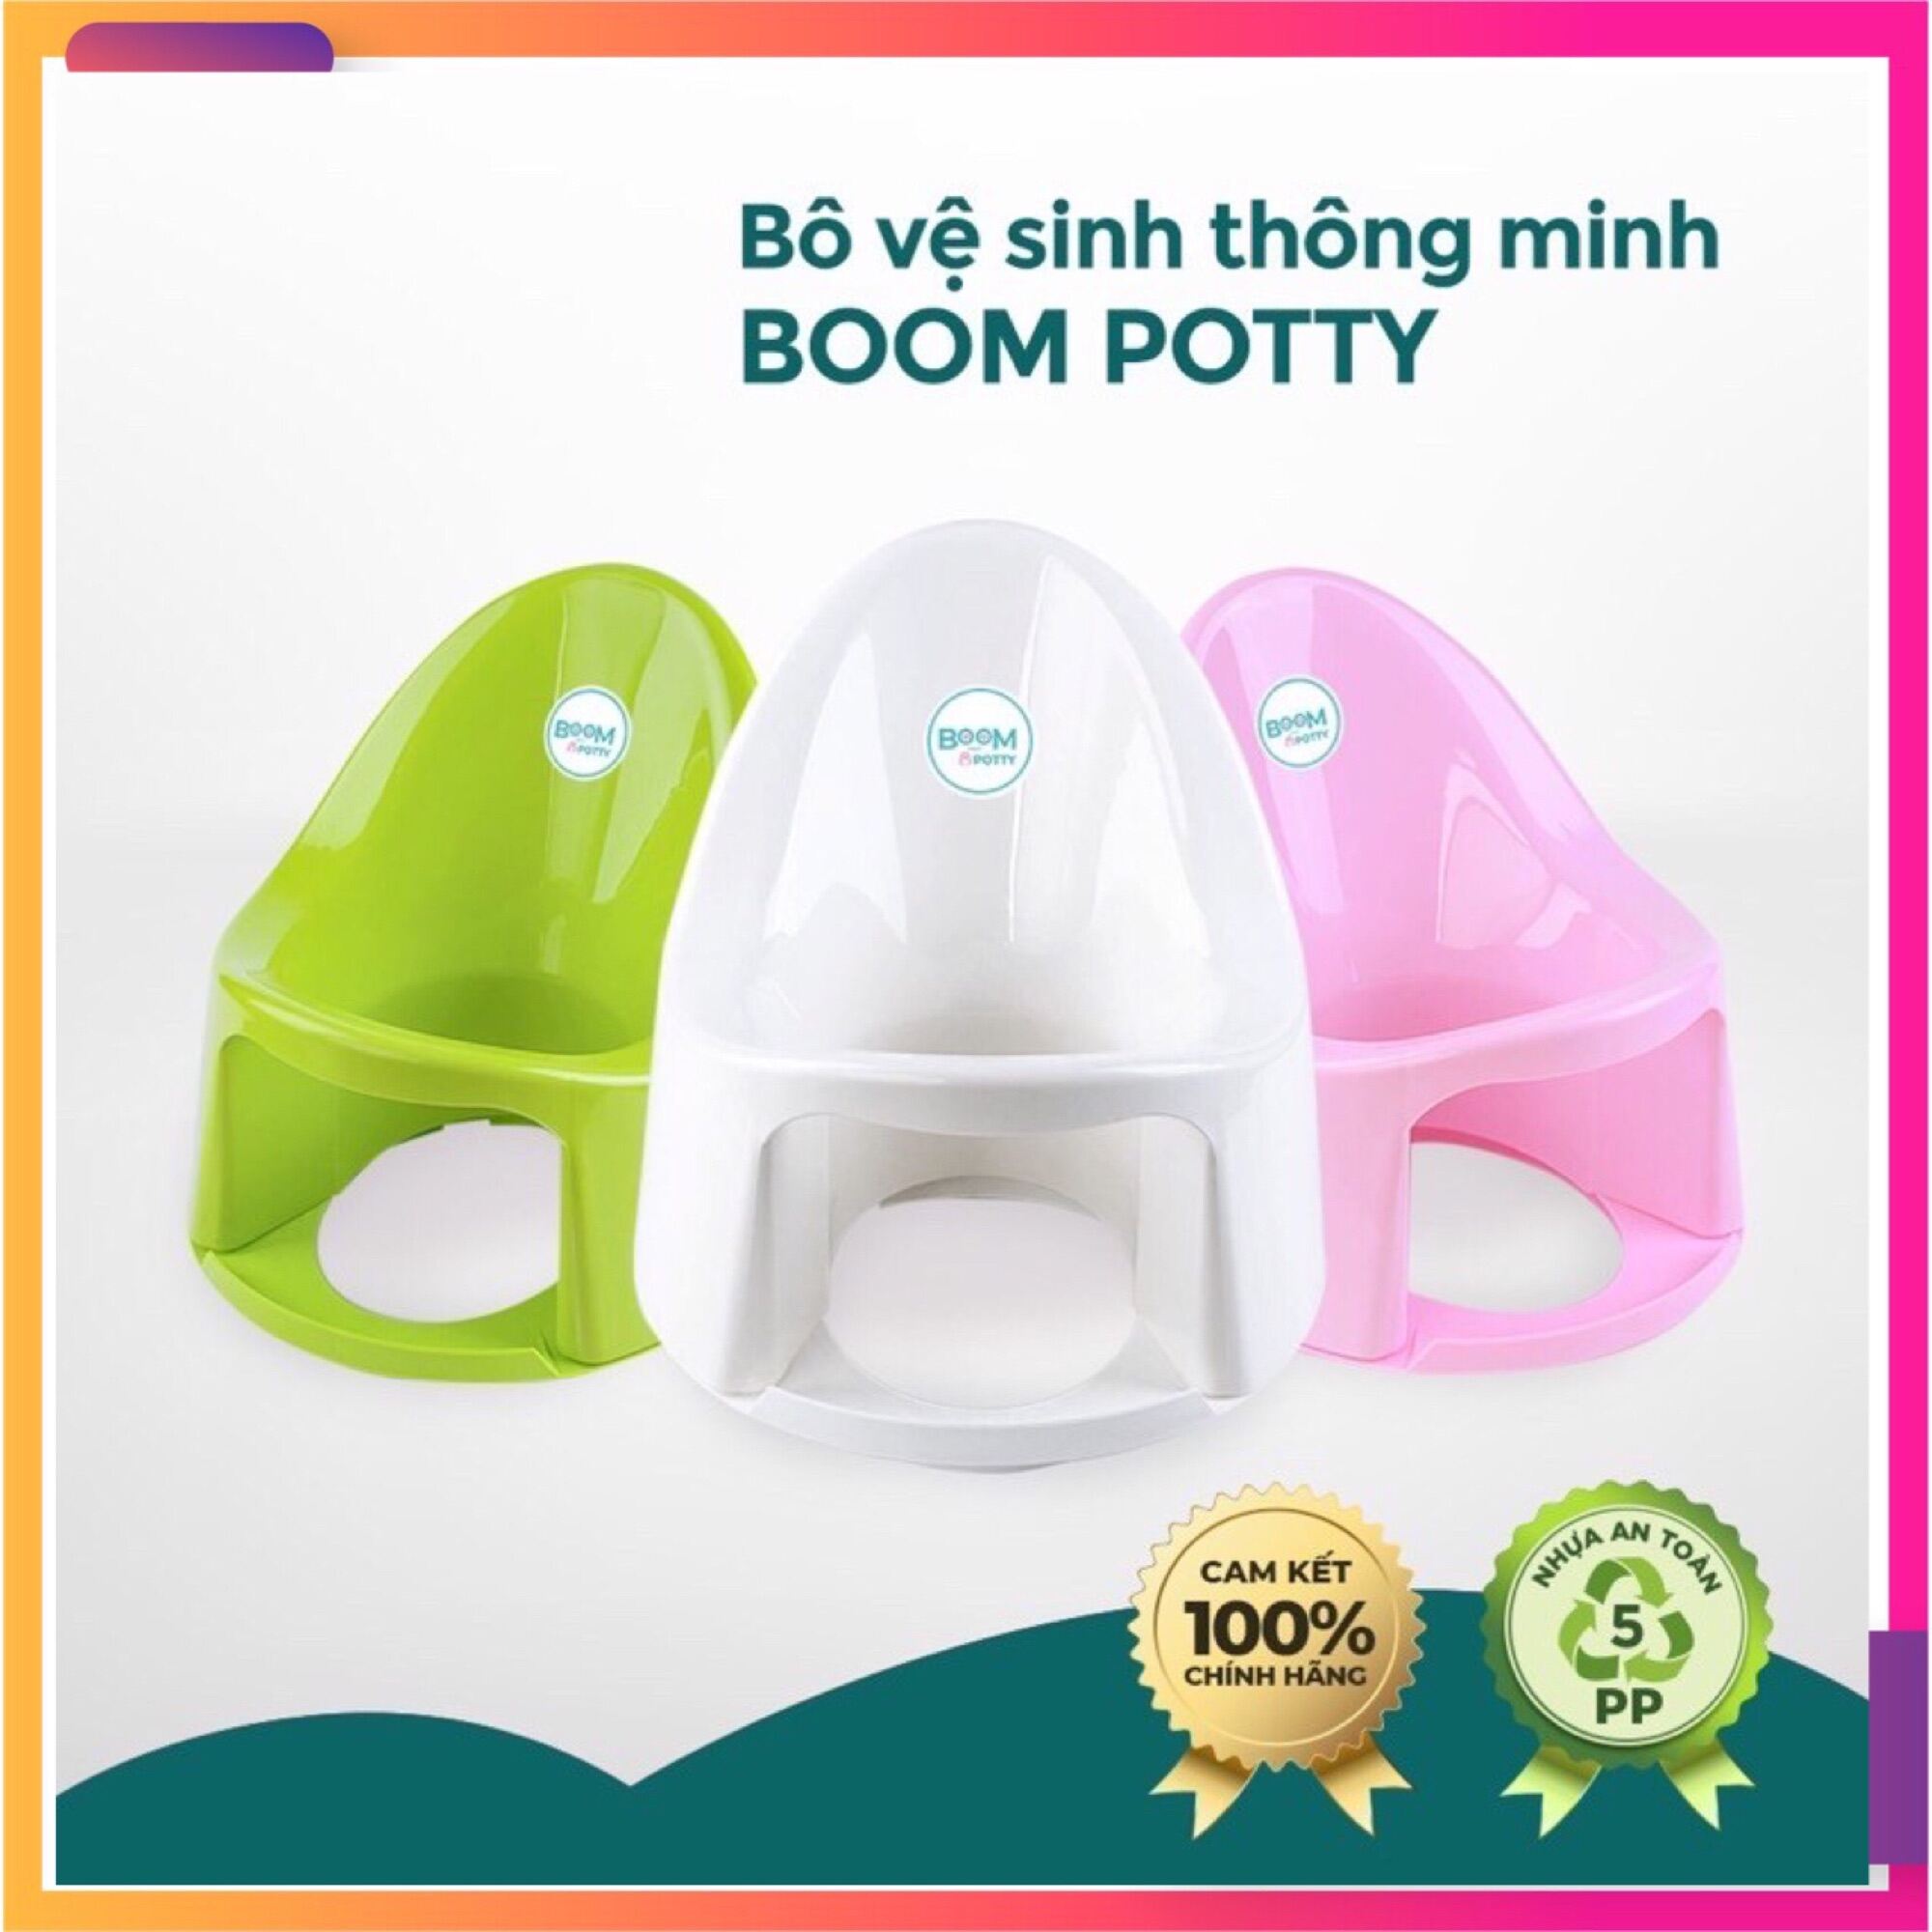 Chính HãngBô dành cho bé,bô vệ sinh dành cho bé Boom potty